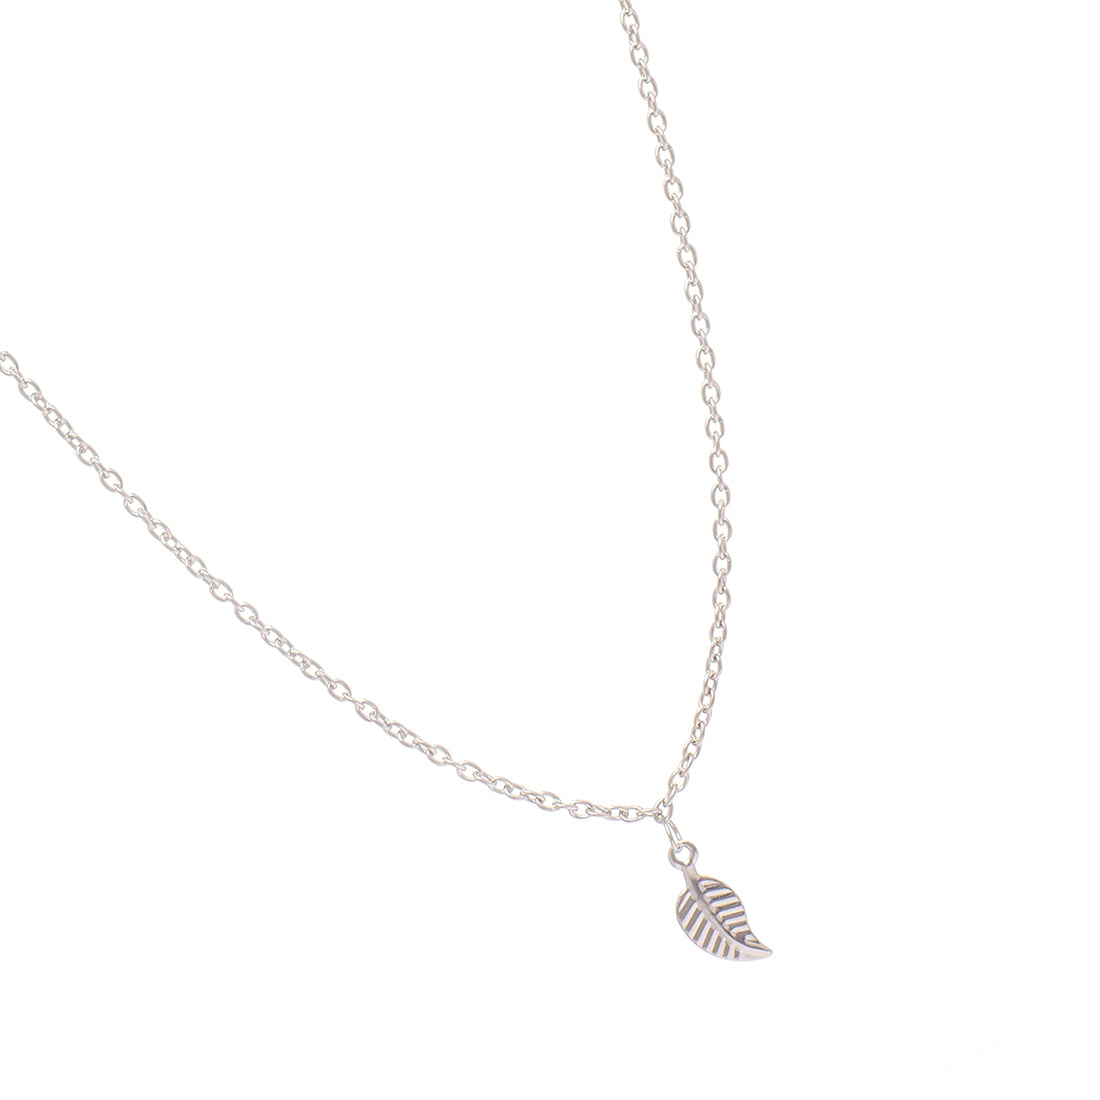 Elegant Silver-Toned Leaf Pendant Necklace